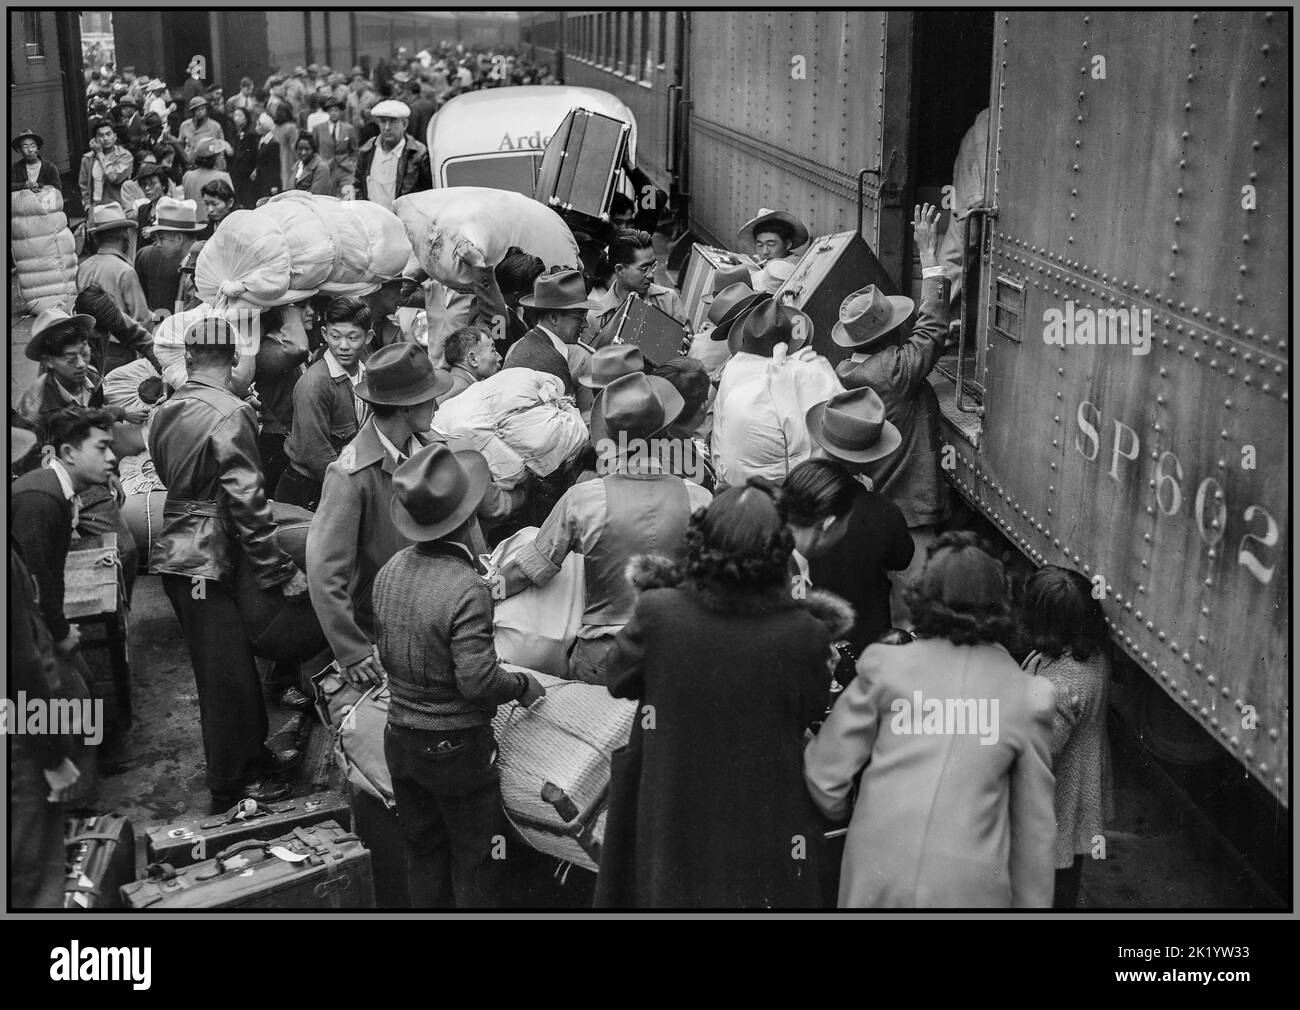 WW2 résidents japonais aux États-Unis ont été relocalisés en WW2 à Los Angeles, en Californie. Les évacués d'origine japonaise embarquant dans un train pour Manzanar, Californie, à 250 kilomètres, où ils seront maintenant logés dans un centre de l'autorité de réinstallation de guerre. Date entre 1942 et 1945 Banque D'Images